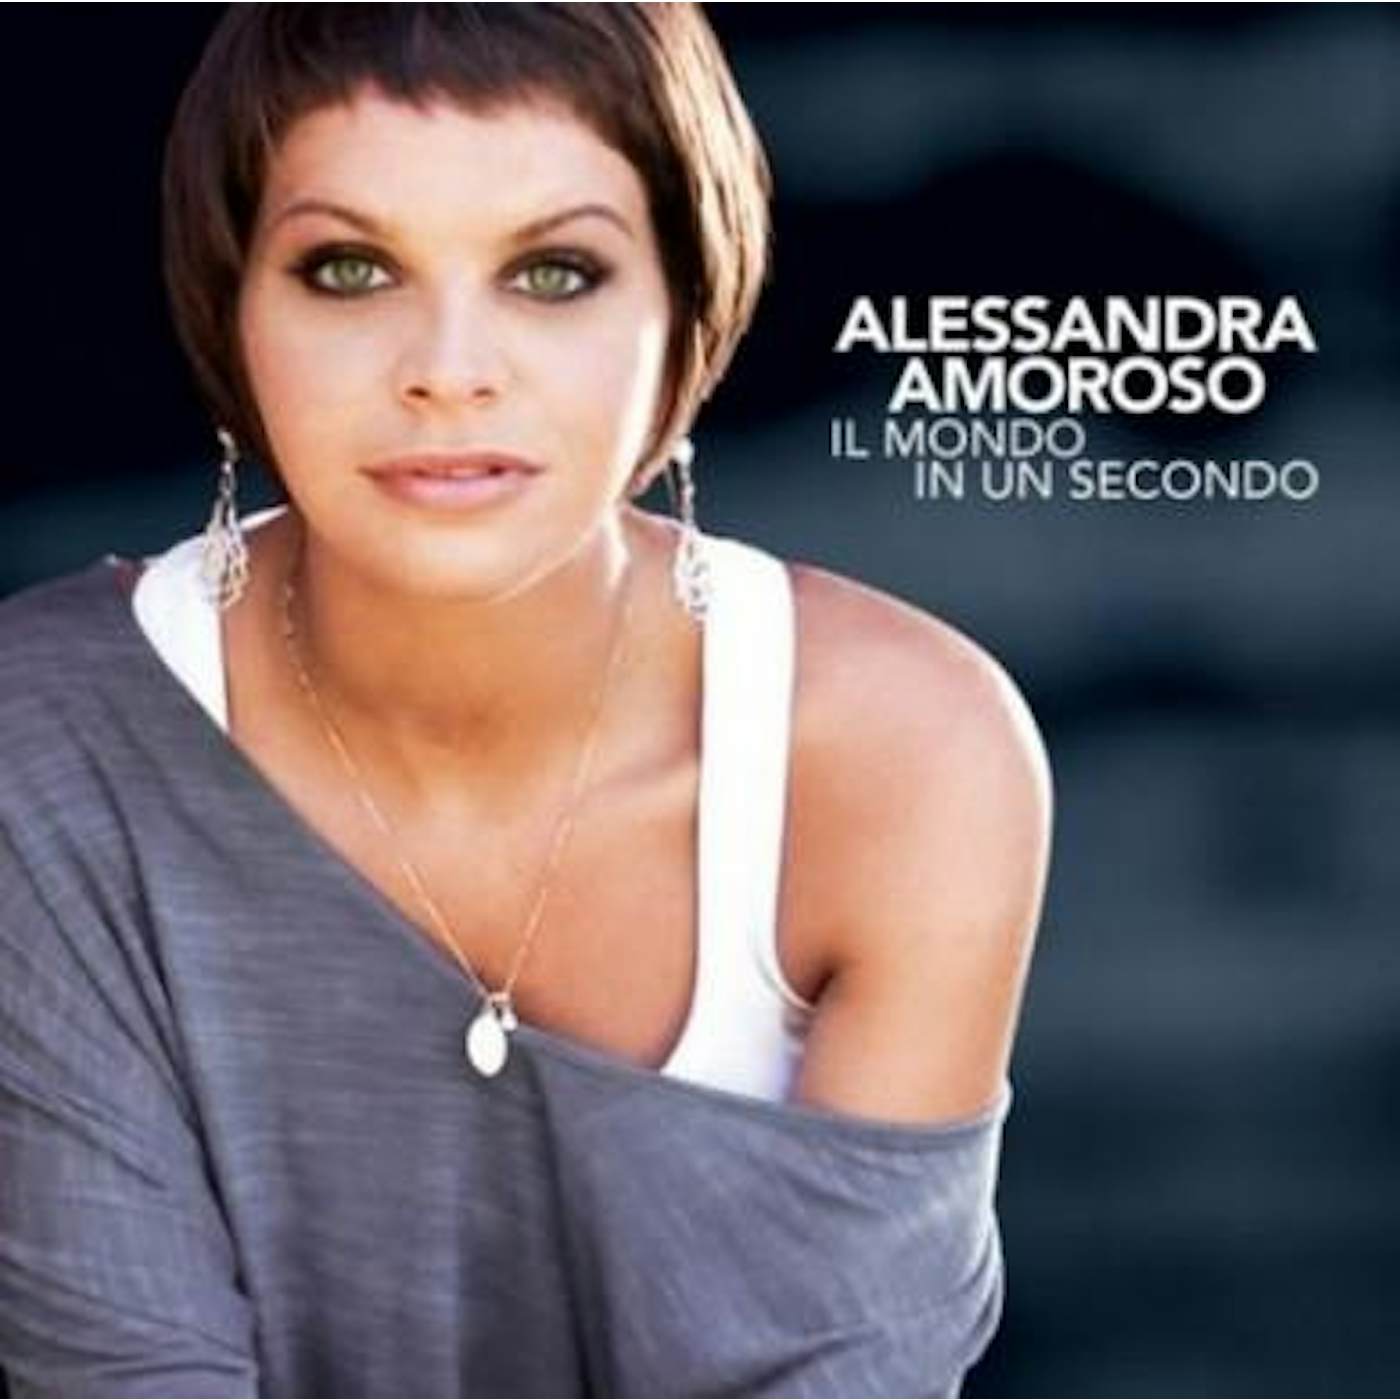 Alessandra Amoroso Il Mondo In Un Secondo Vinyl Record